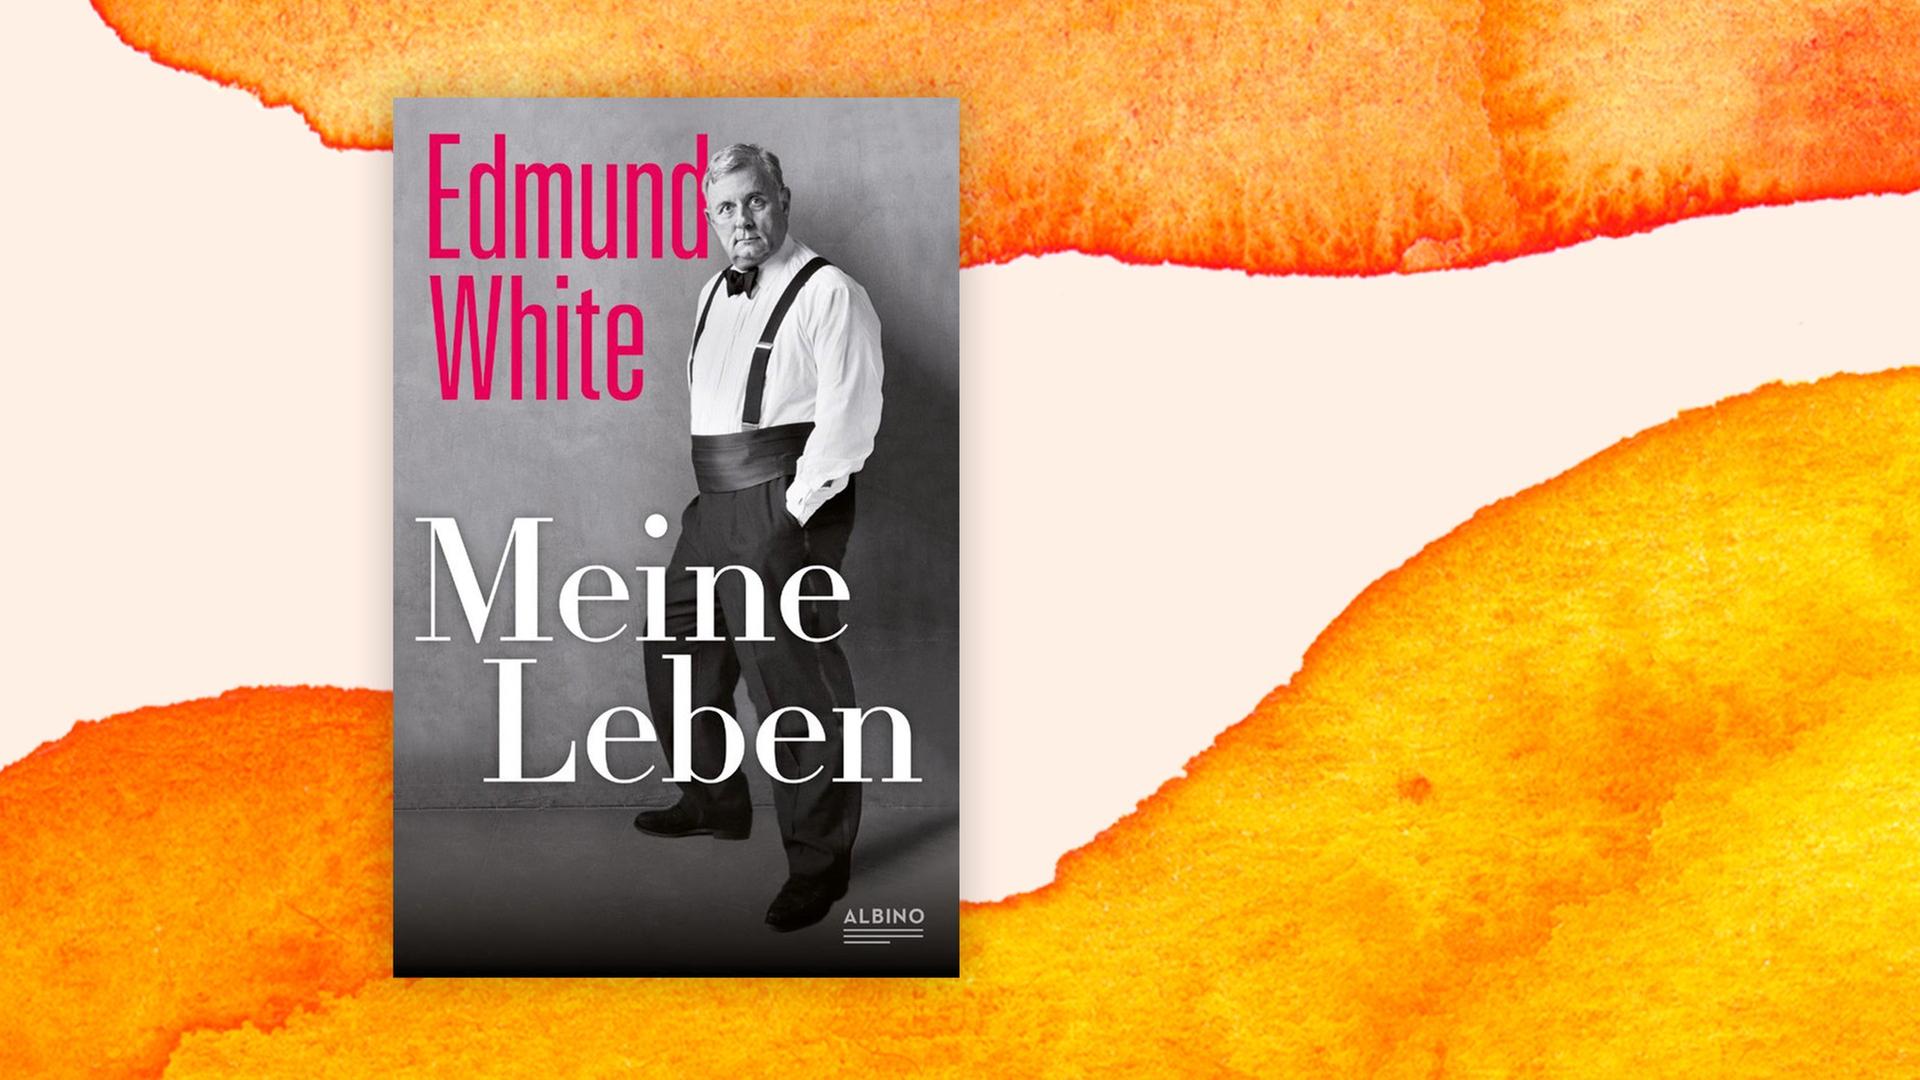 Das Buchcover von Edmund Whites Memoiren "Meine Leben" zeigt den Autor in weißem Hemd mit Fliege, schwarzer Hose, Bauchbinde und Hosenträgern, wie er breitbeinig dasteht, die Hände in den Hosentaschen, mit herausforderndem Blick.